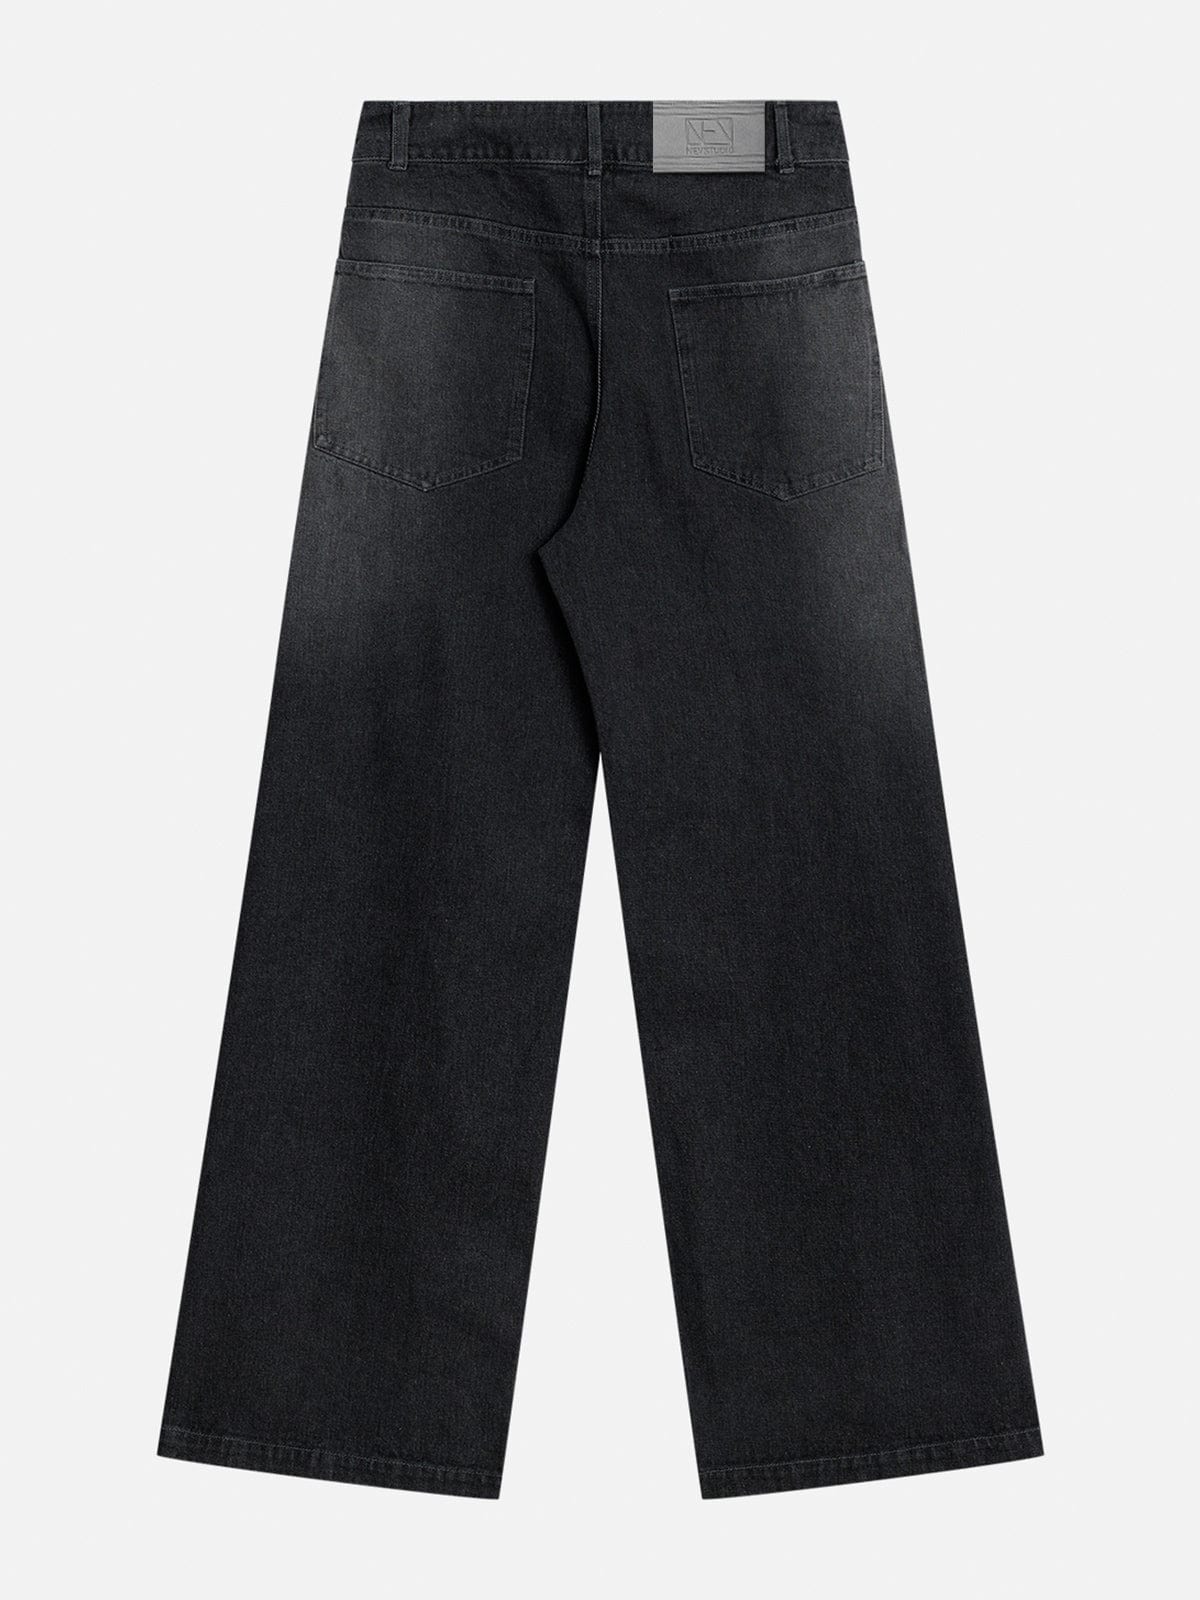 NEV Gradient Tie Dye Wide-leg Jeans